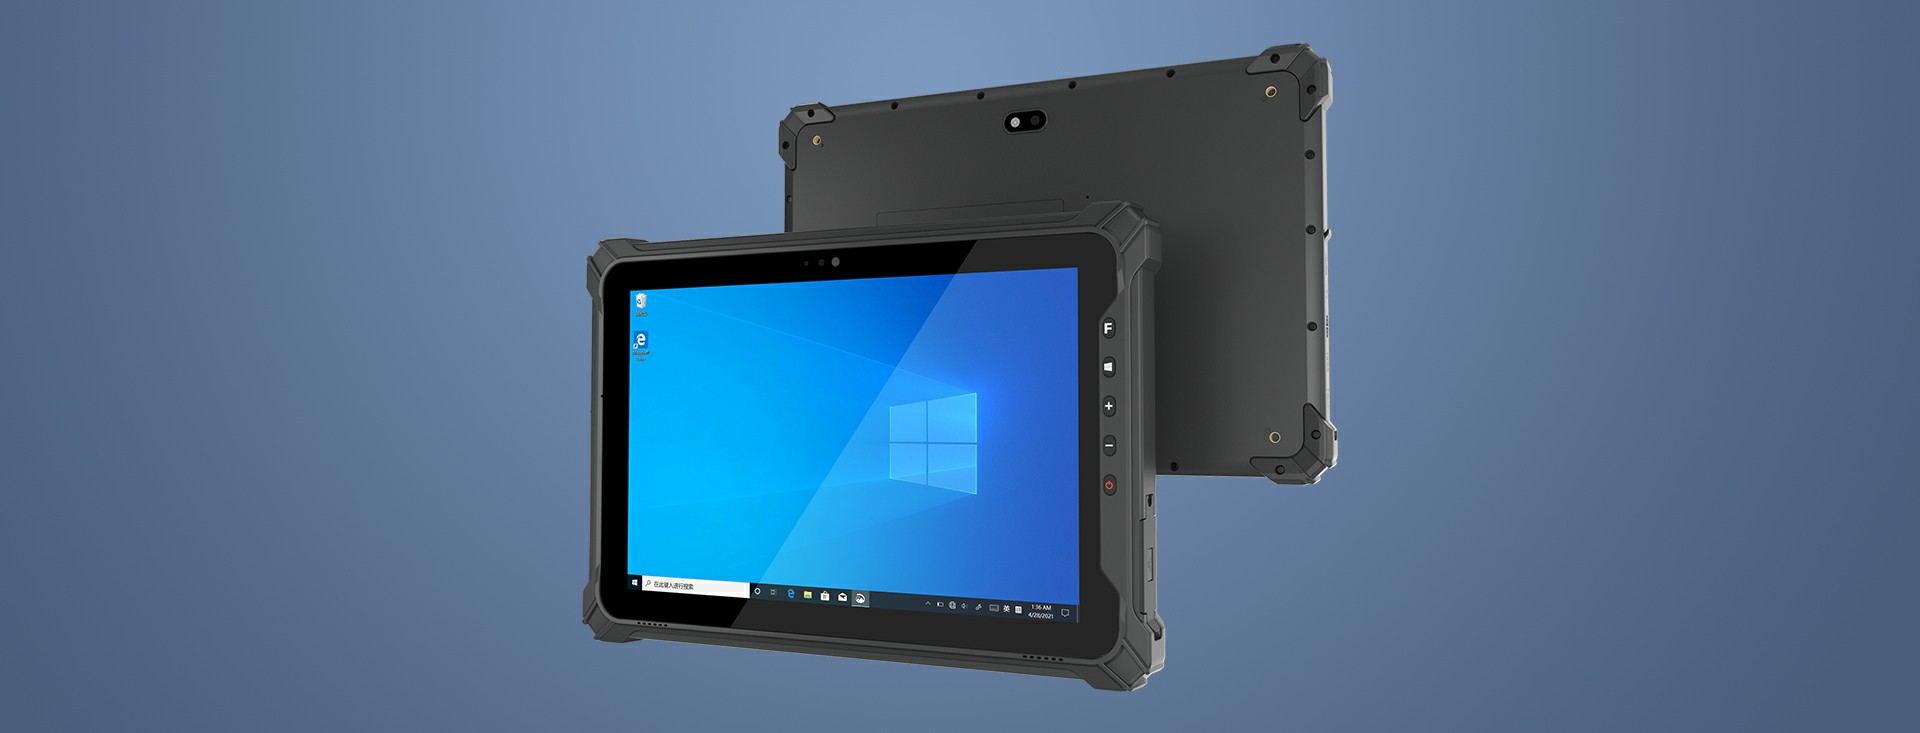 EM-I87J industrial rugged tablet